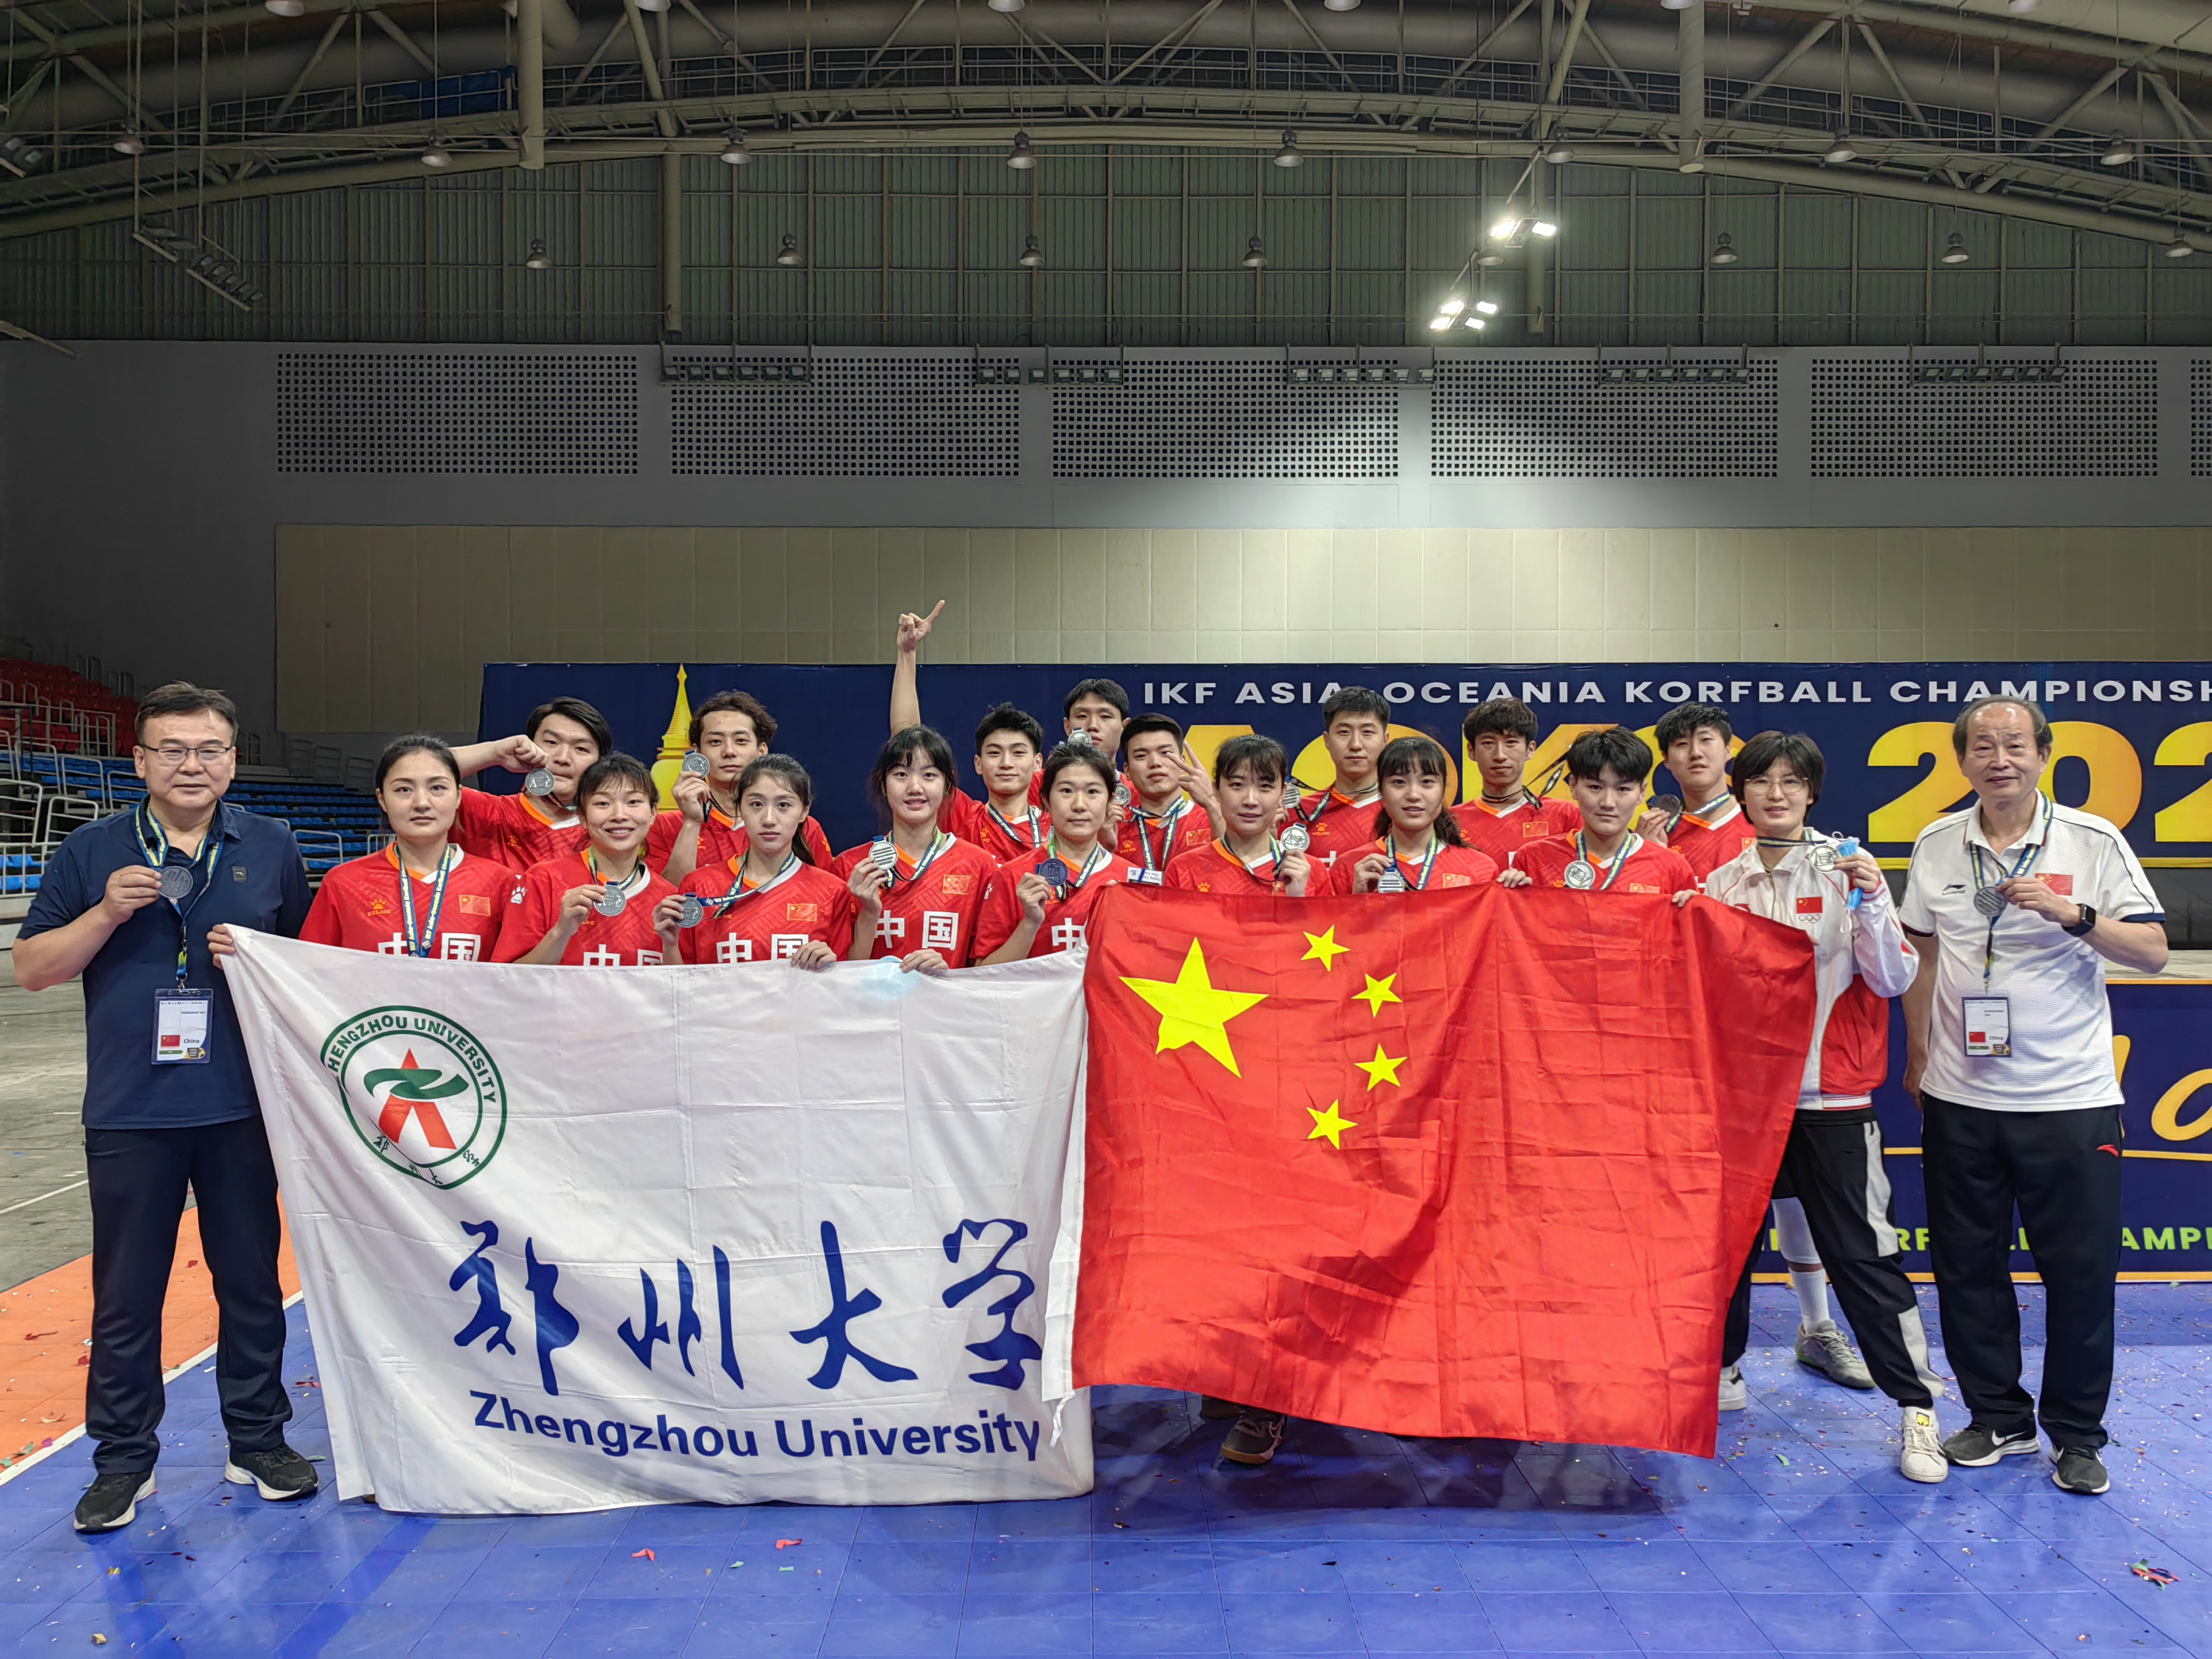 由郑州大学师生领衔的中国荷球队荣获2022年亚洲大洋洲荷球锦标赛亚军